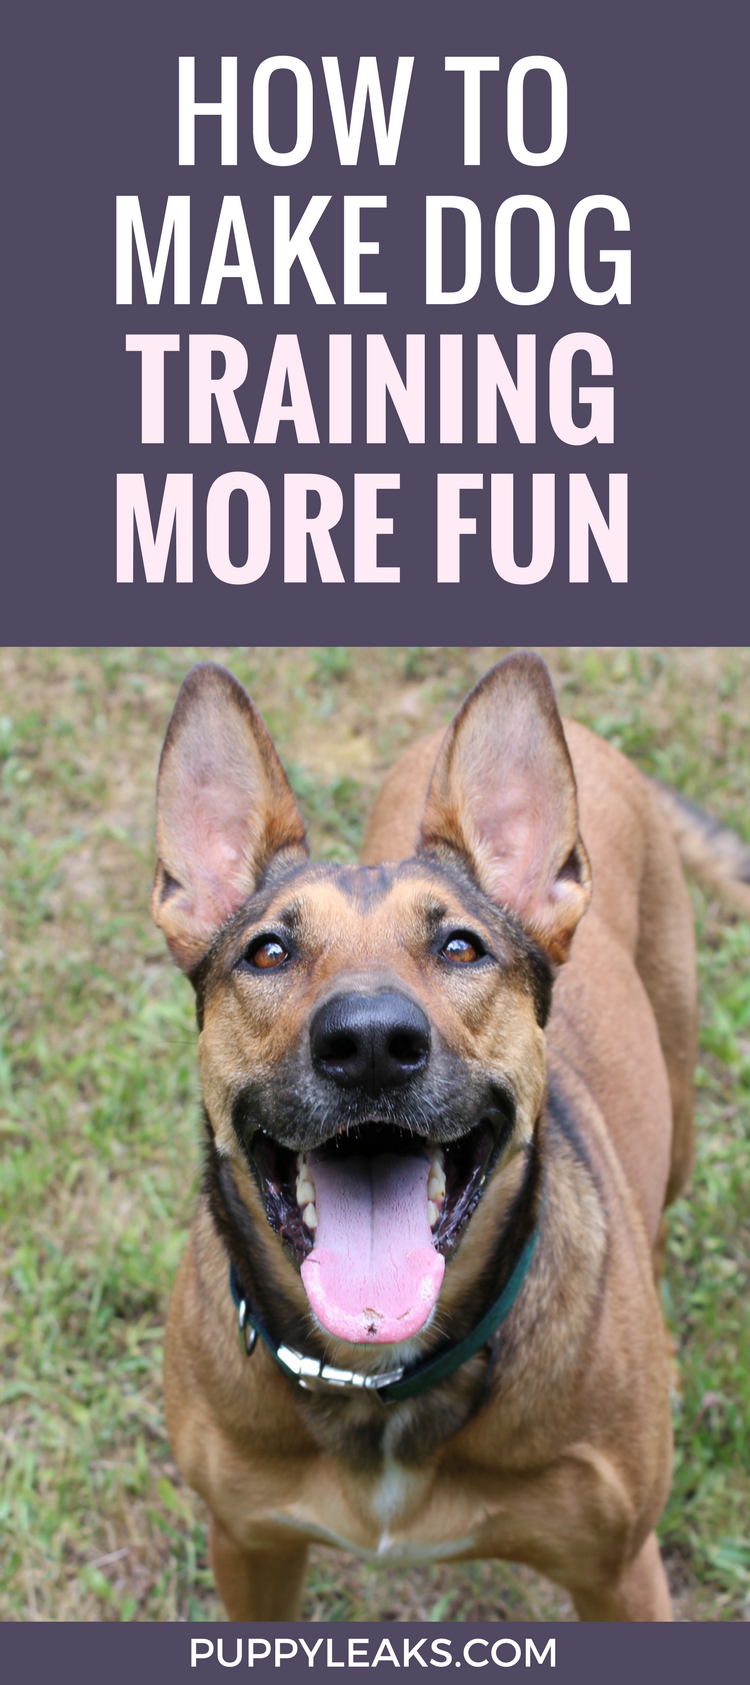 Como manter o adestramento de cães divertido mudando as recompensas